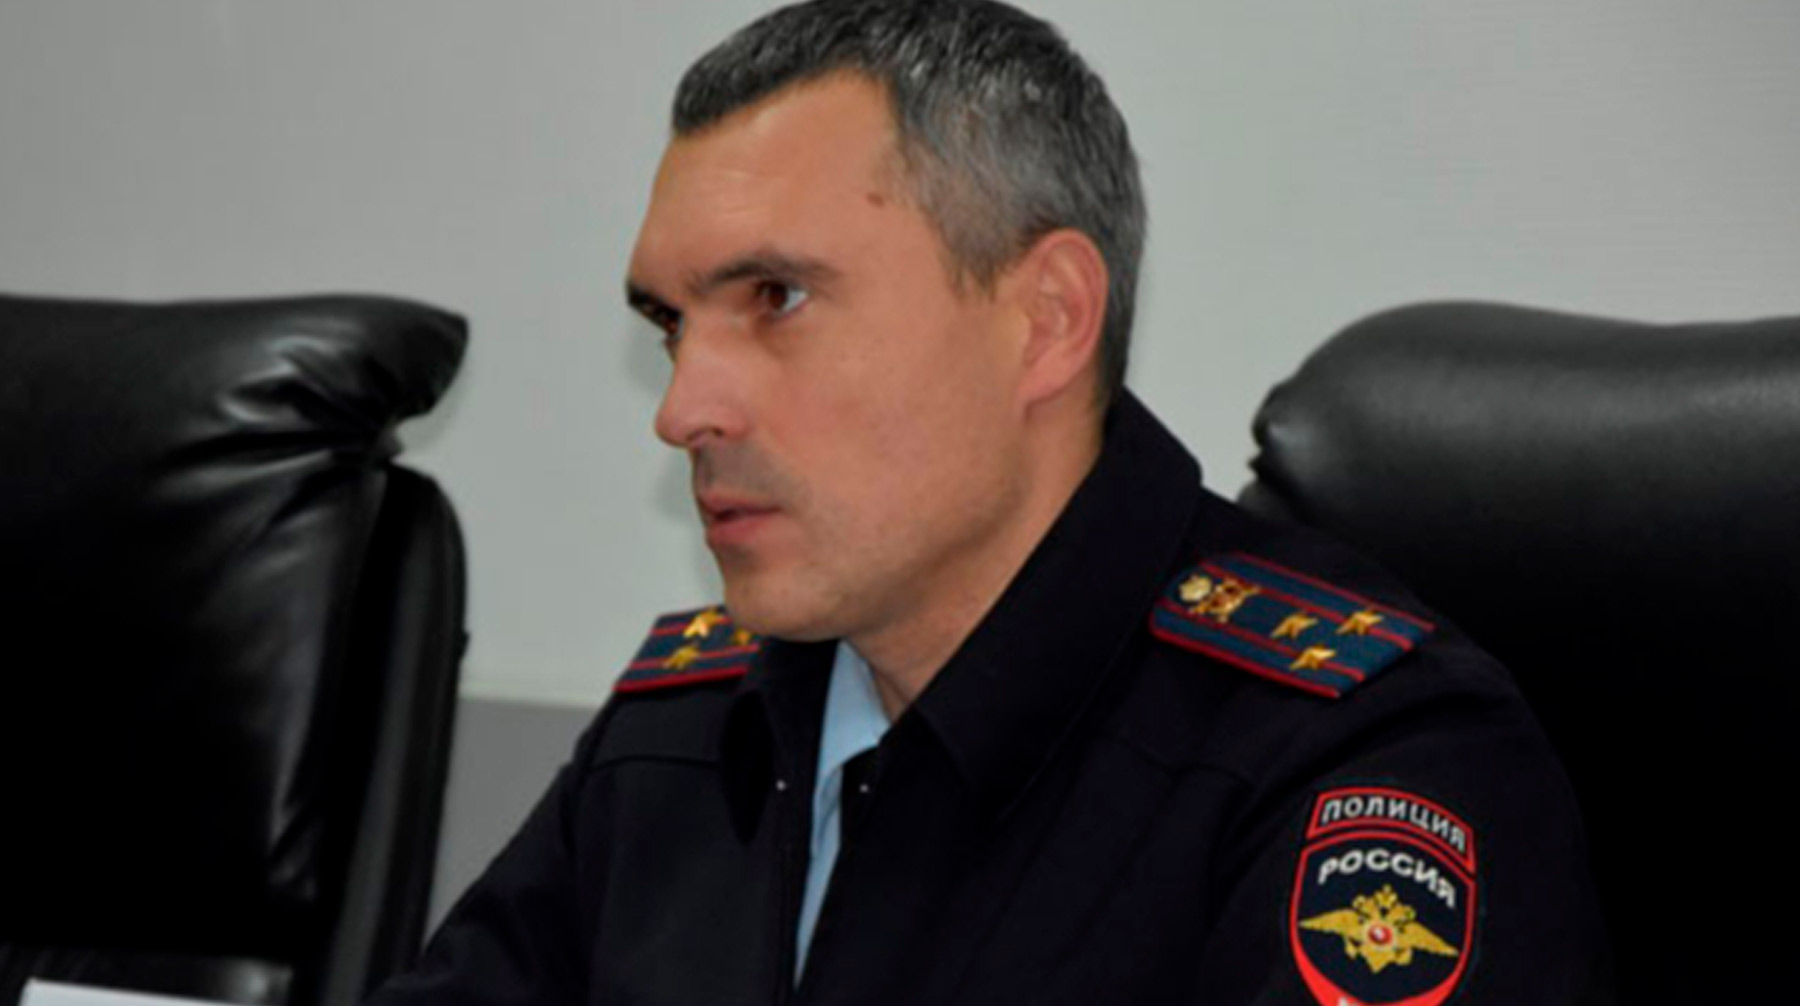 Полицейский Шамиль Сибанов не ездит домой, а в кабинет к нему подчиненные заходят в масках и перчатках Шамиль Сибанов